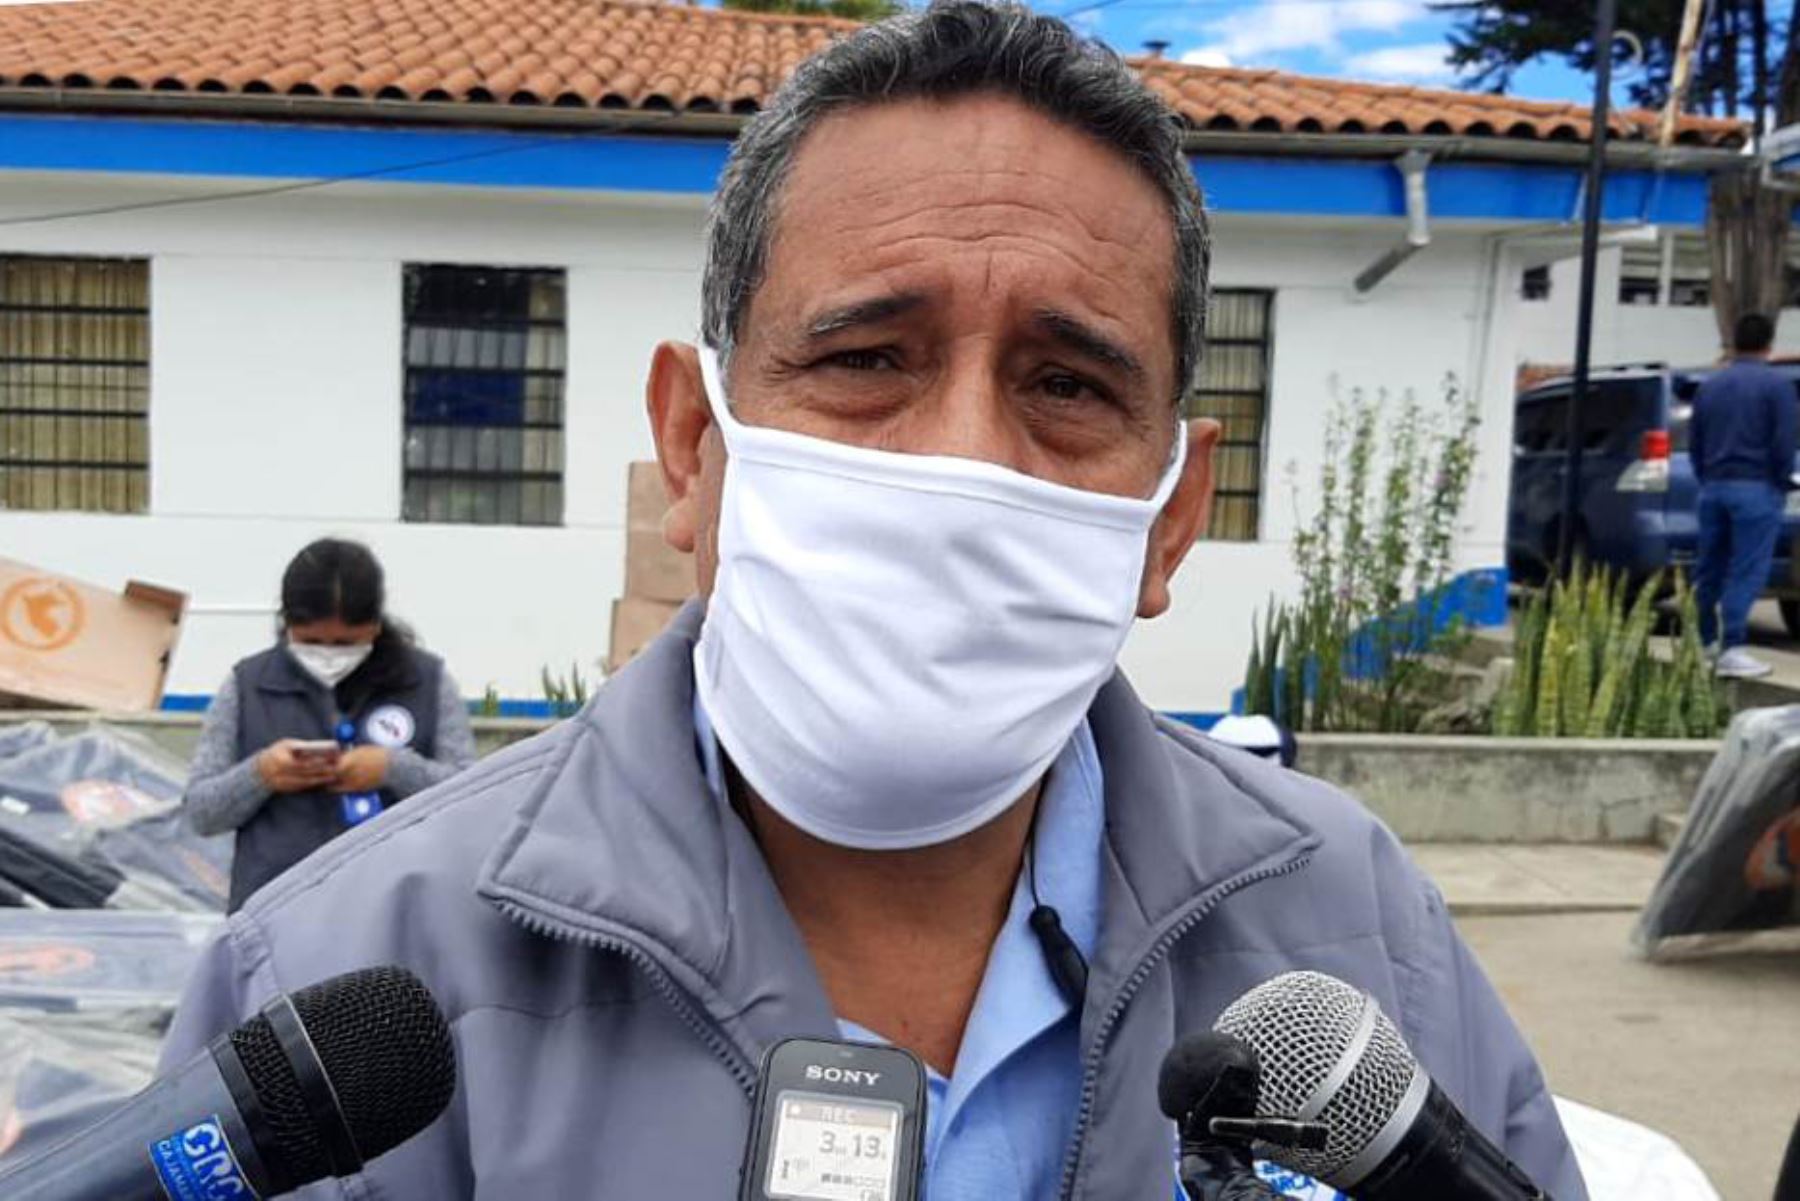 La región Cajamarca contará con mayor número de médicos y otros profesionales de salud especializados para mejorar su capacidad de respuesta hospitalaria frente al aumento de contagios y fallecimientos por coronavirus, gracias a la capacitación que brindará el Ministerio de Salud (Minsa), destacó el gobernador regional Mesías Guevara. ANDINA/Difusión